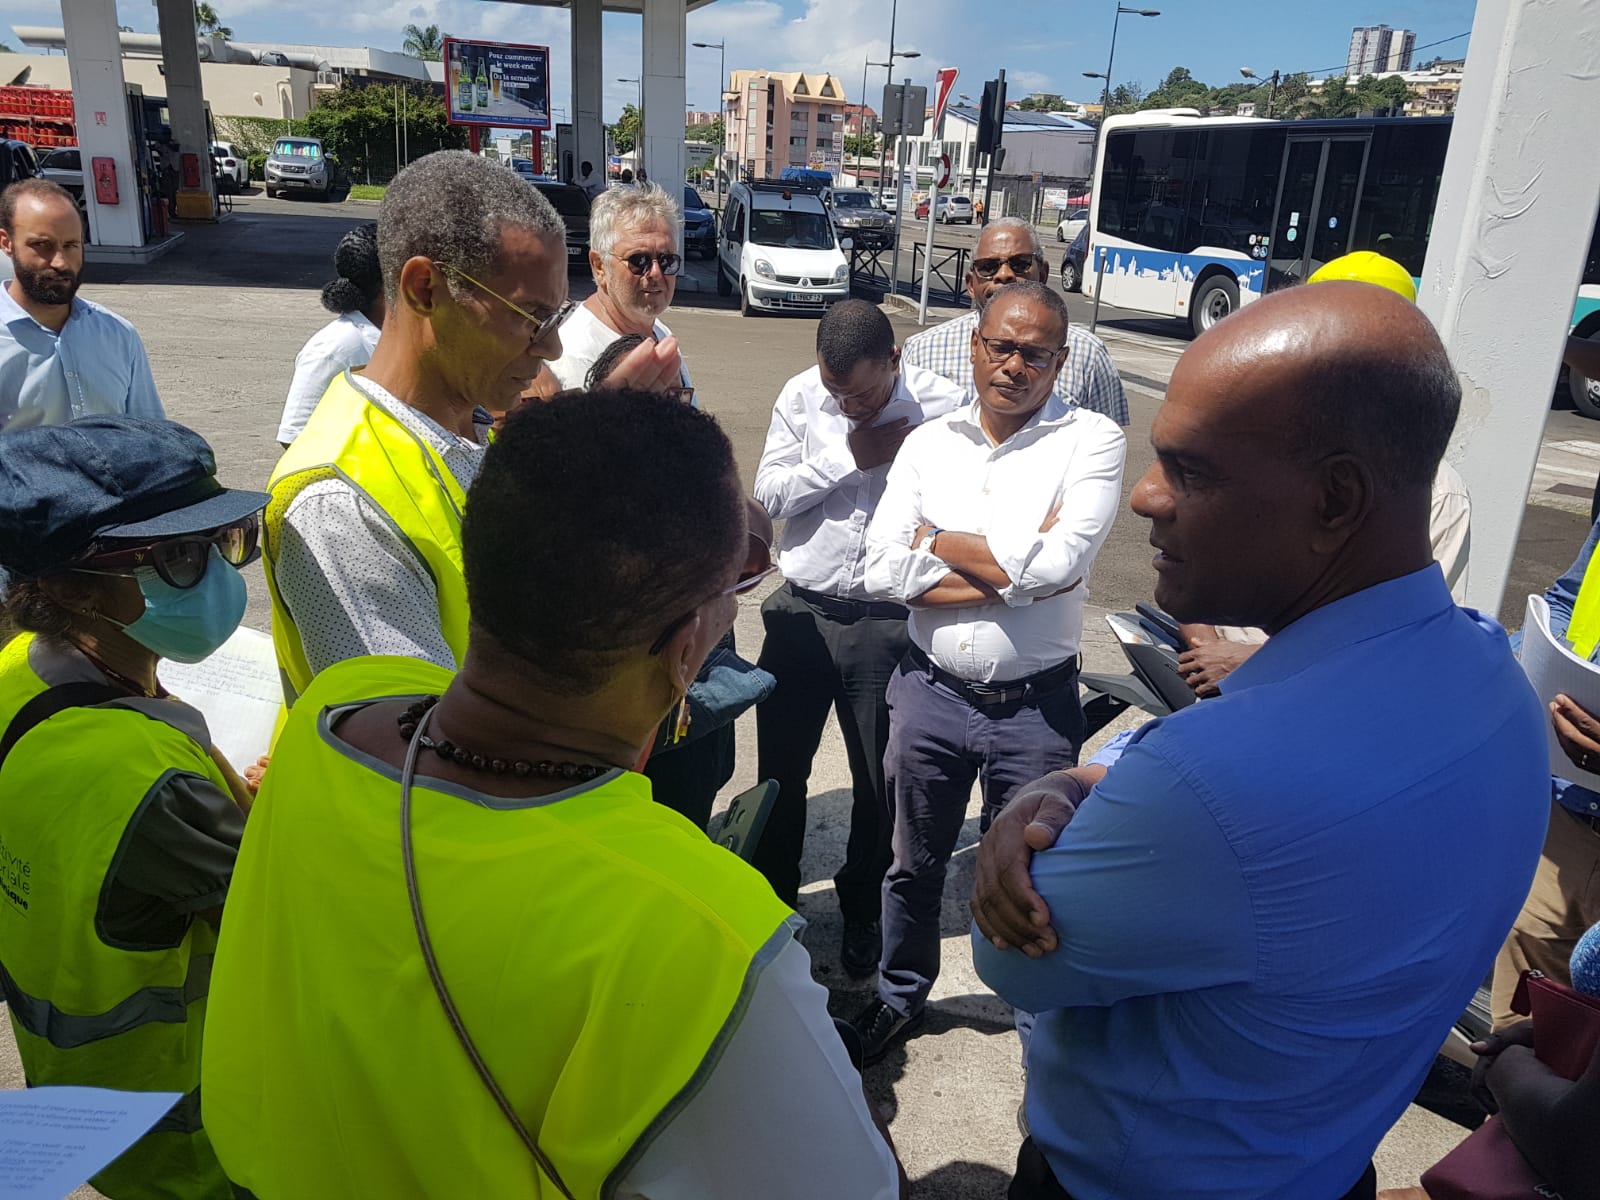     Insécurité routière : la ville et la CTM visitent les habitants du boulevard Maurice Bishop

